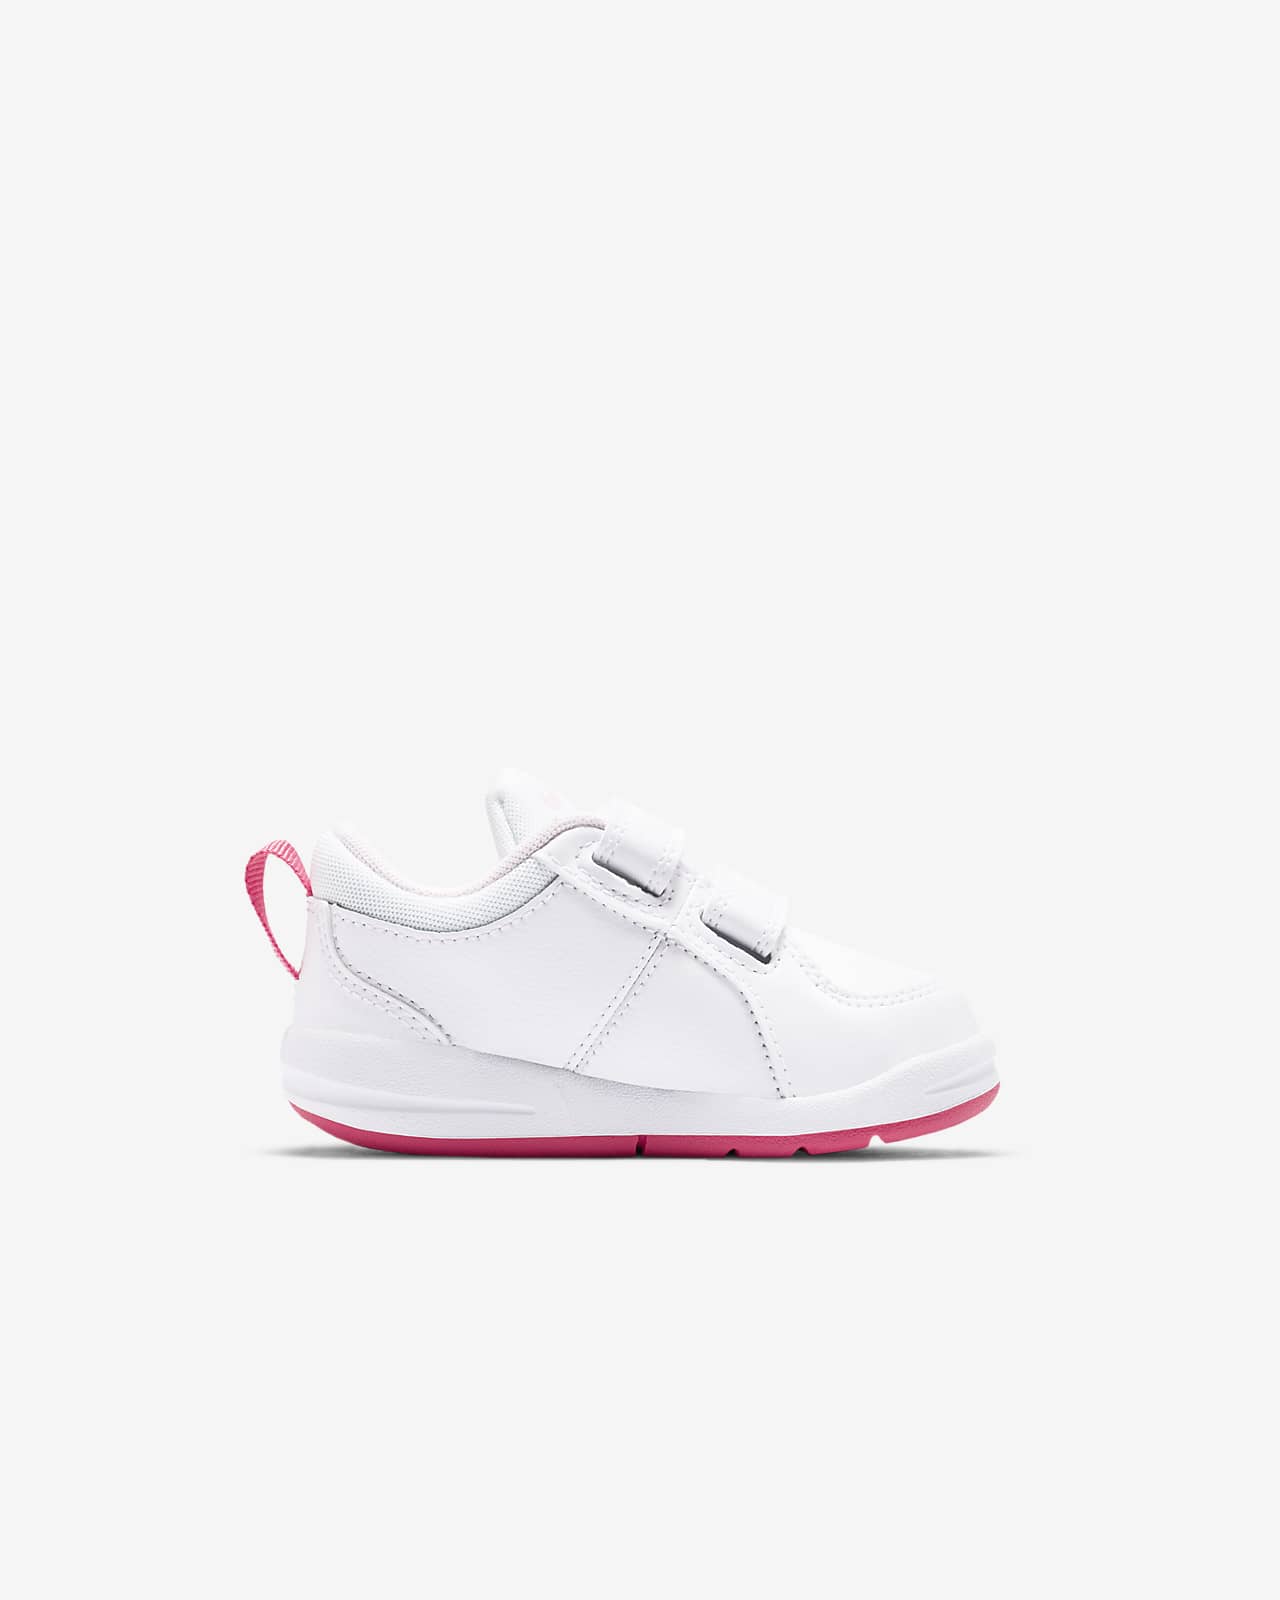 Nike Pico 4 Baby/Toddler Shoes. Nike